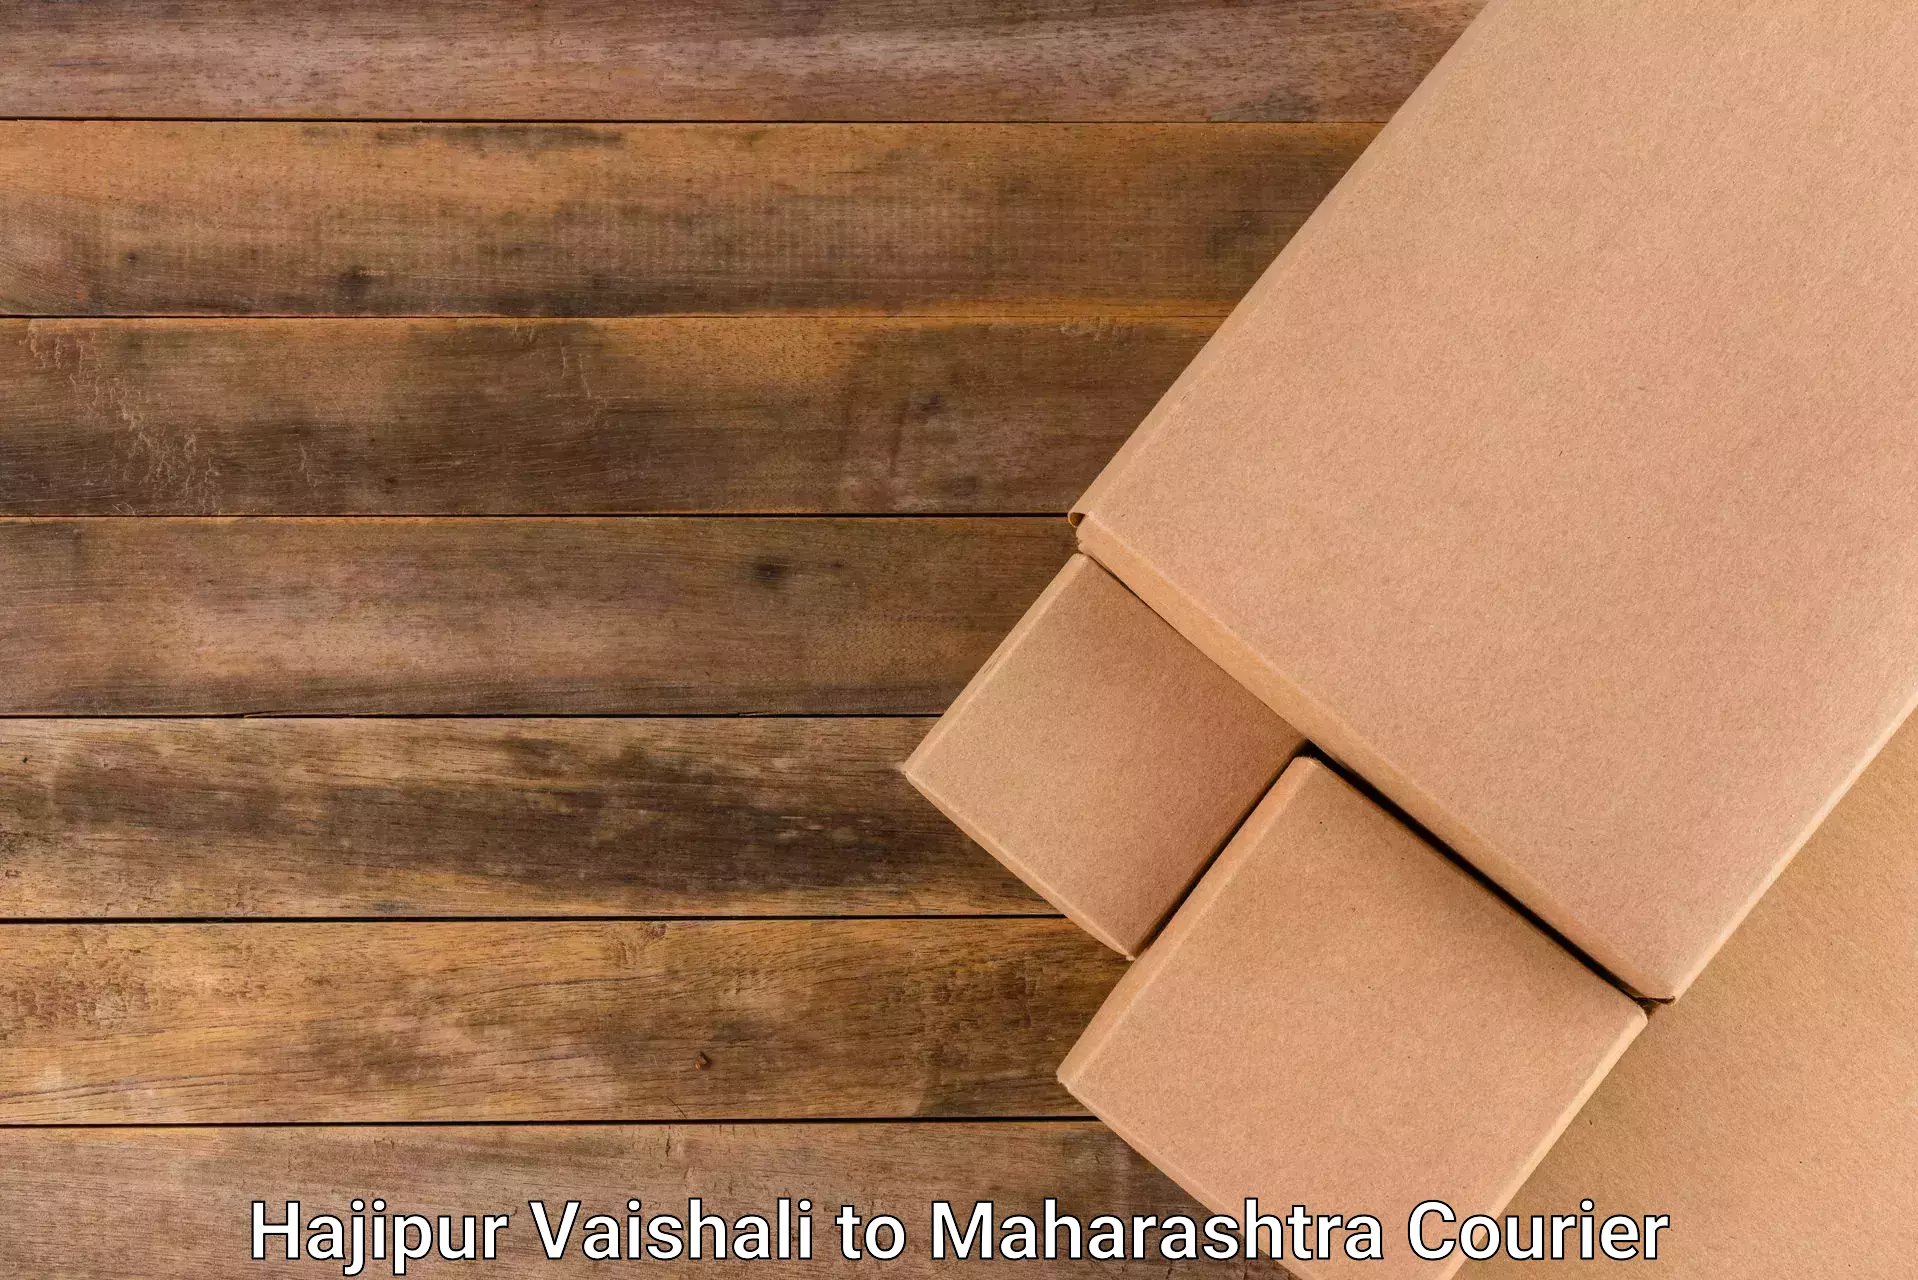 Advanced shipping technology Hajipur Vaishali to Shahada